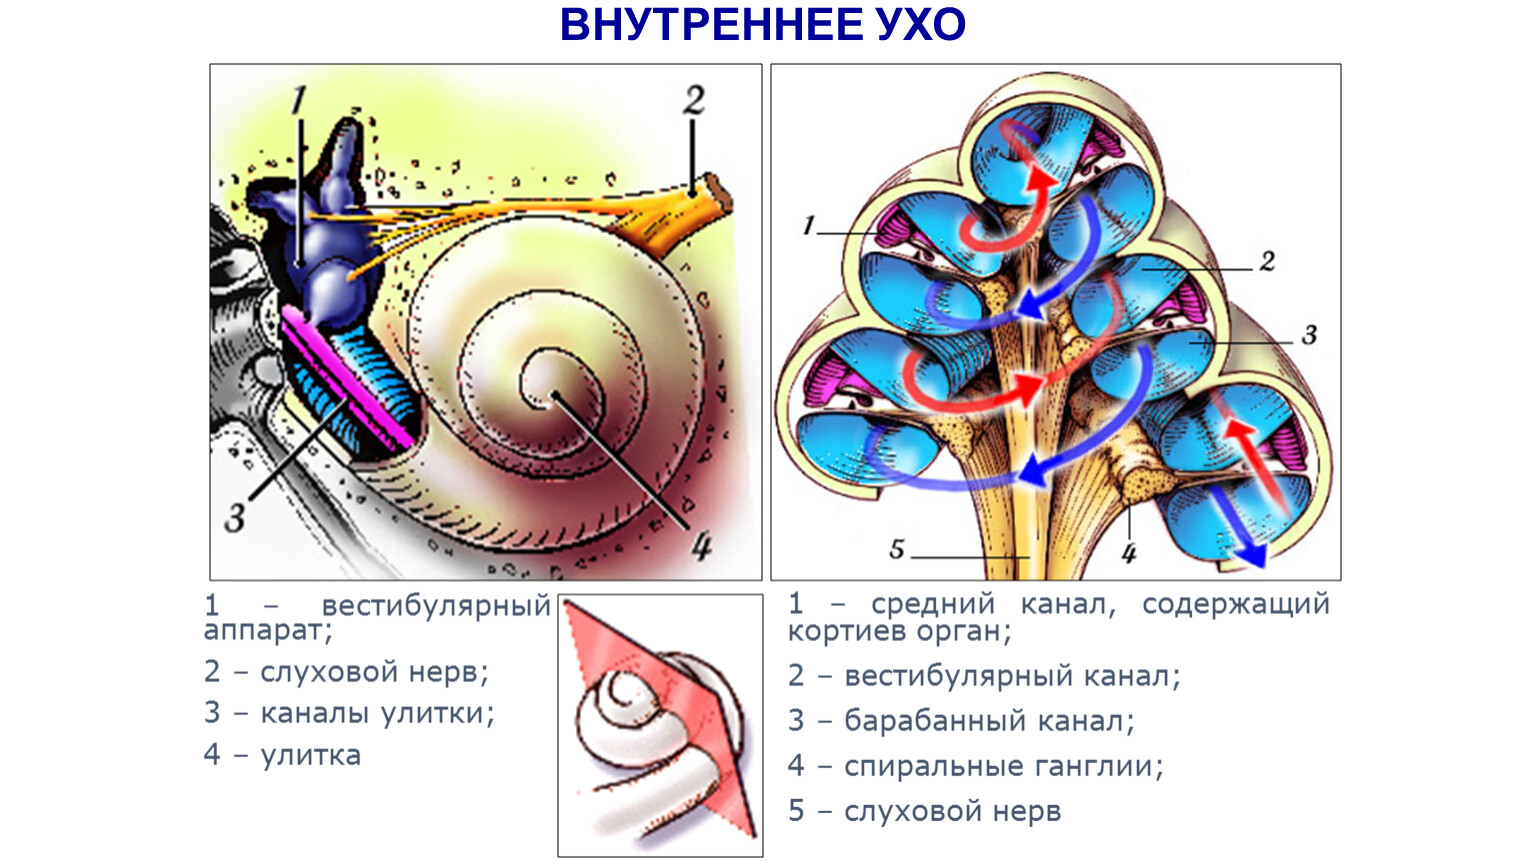 Внутреннее ухо является. Внутреннее ухо строение анатомия строение улитки. Строение улитки внутреннего уха. Строение улитки внутреннего уха анатомия. Внутреннее строение улитки внутреннего уха.